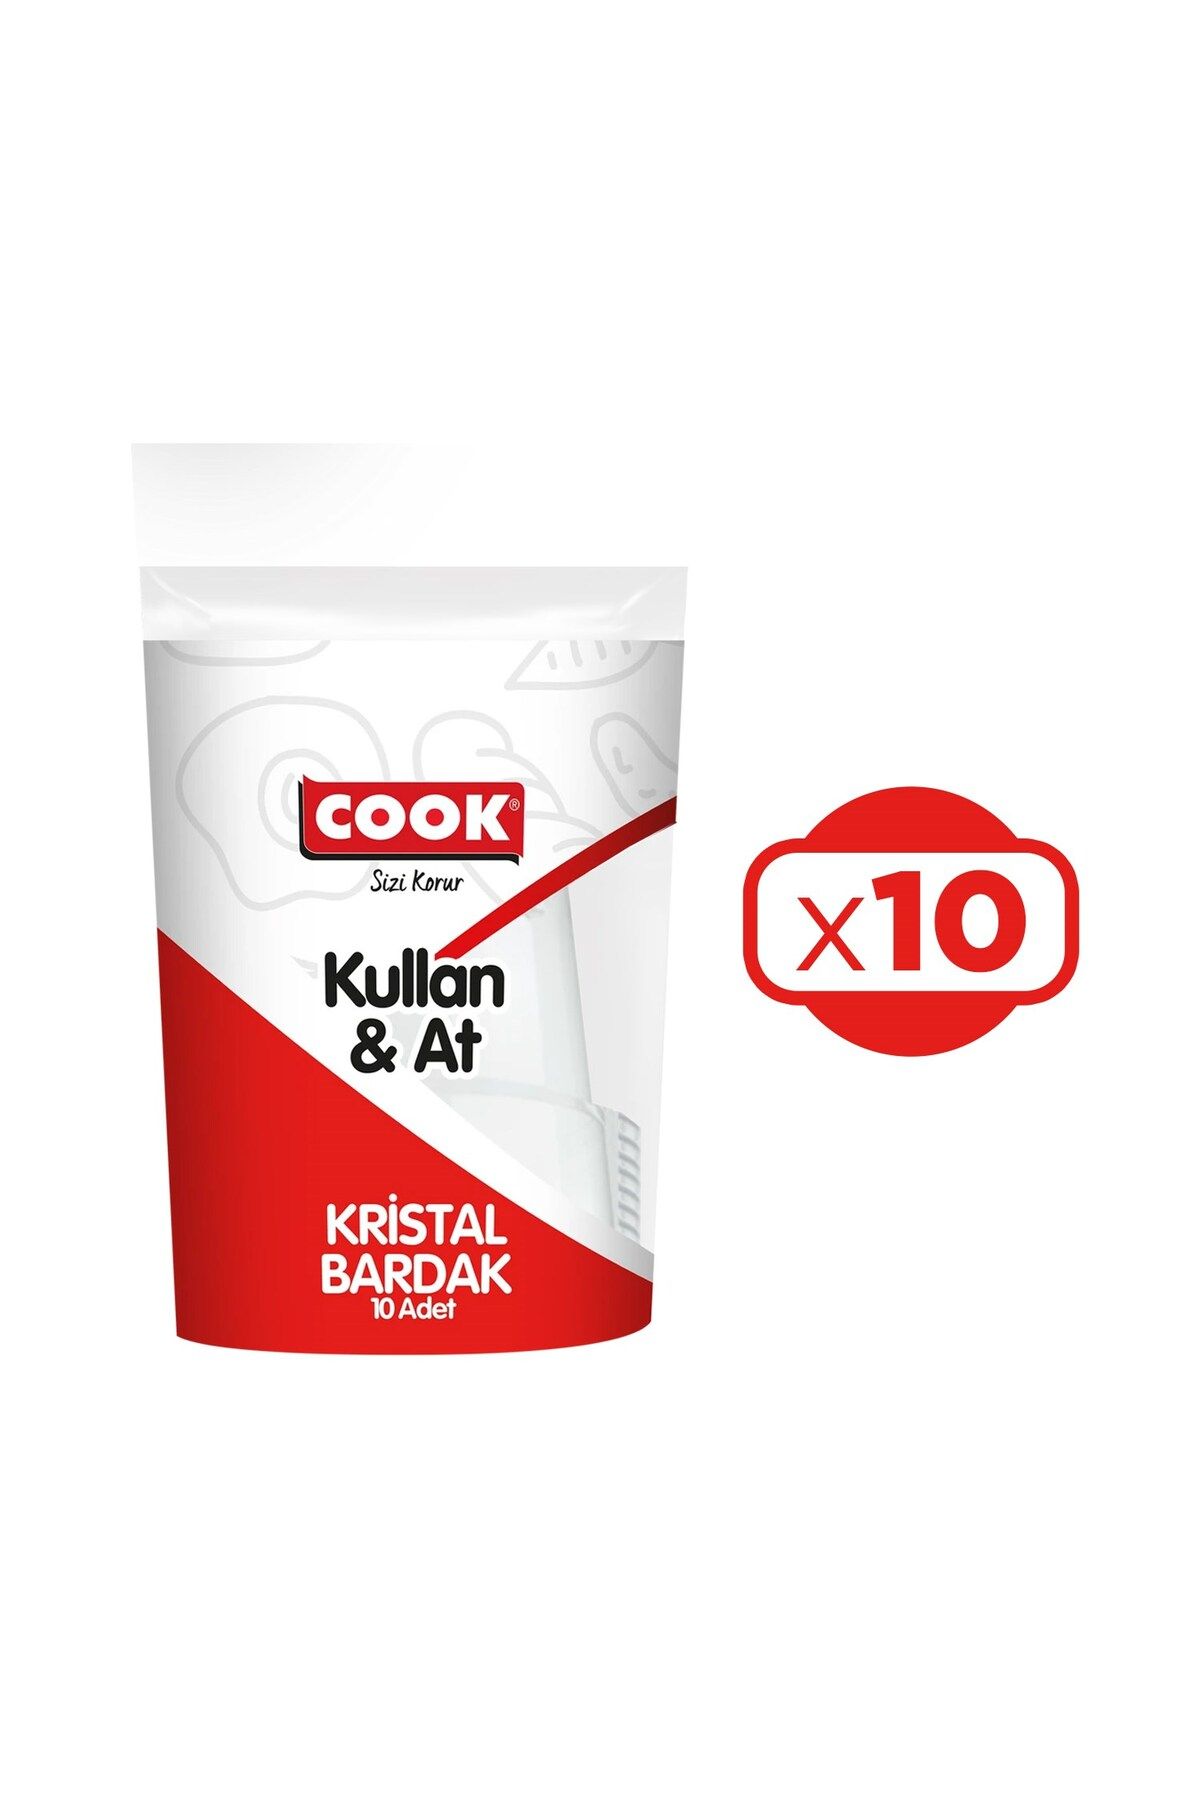 COOK Kristal Bardak Kullan&At 10 lu x 10 Paket (100 Adet)